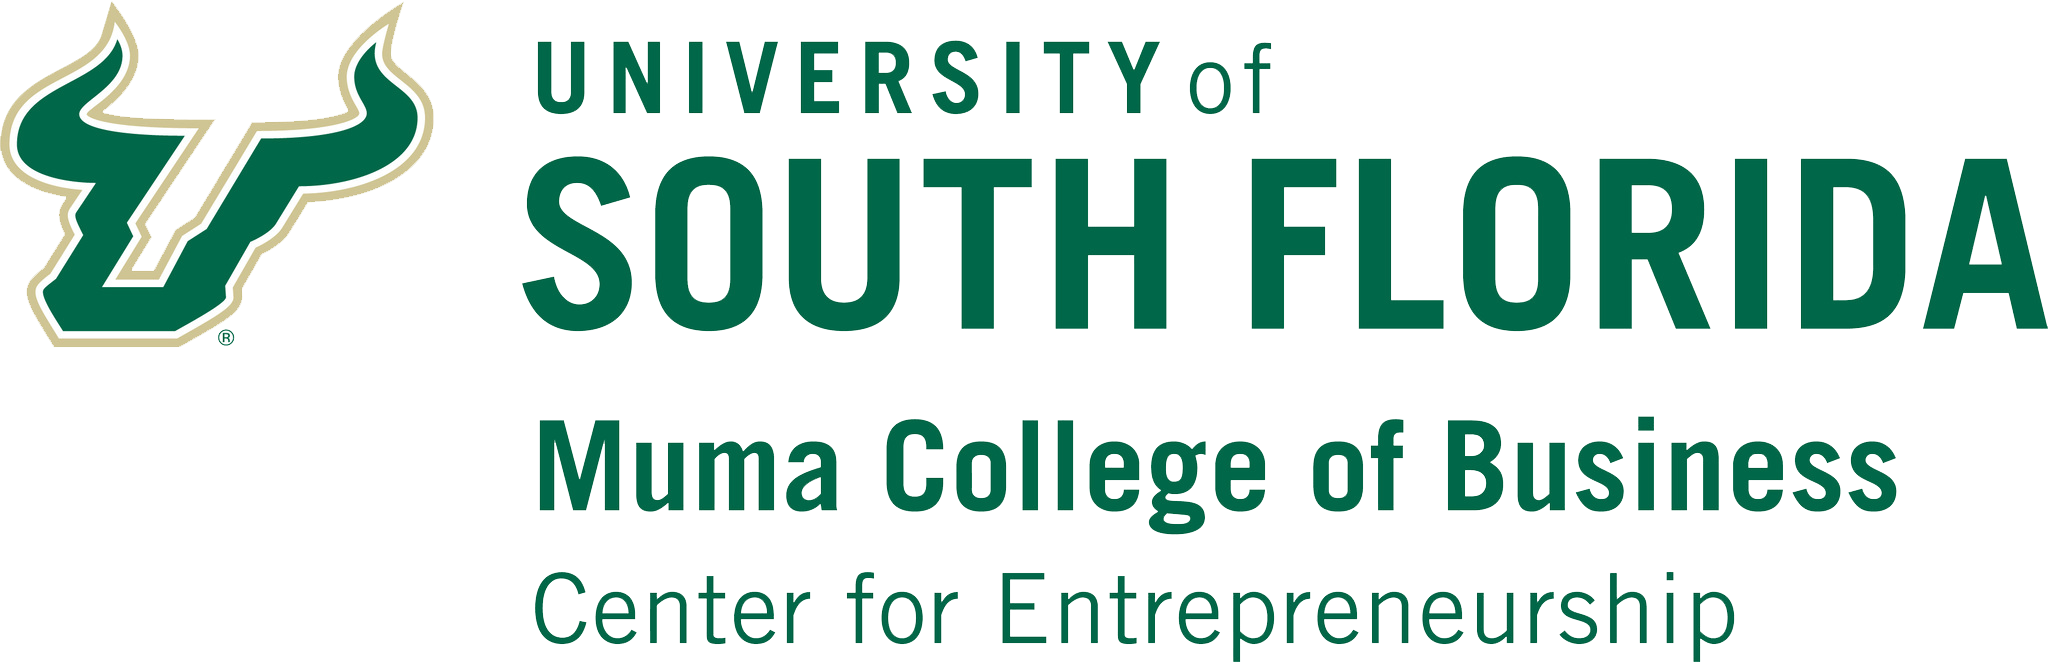 USF Muma College of Business Center for Entrepreneurship